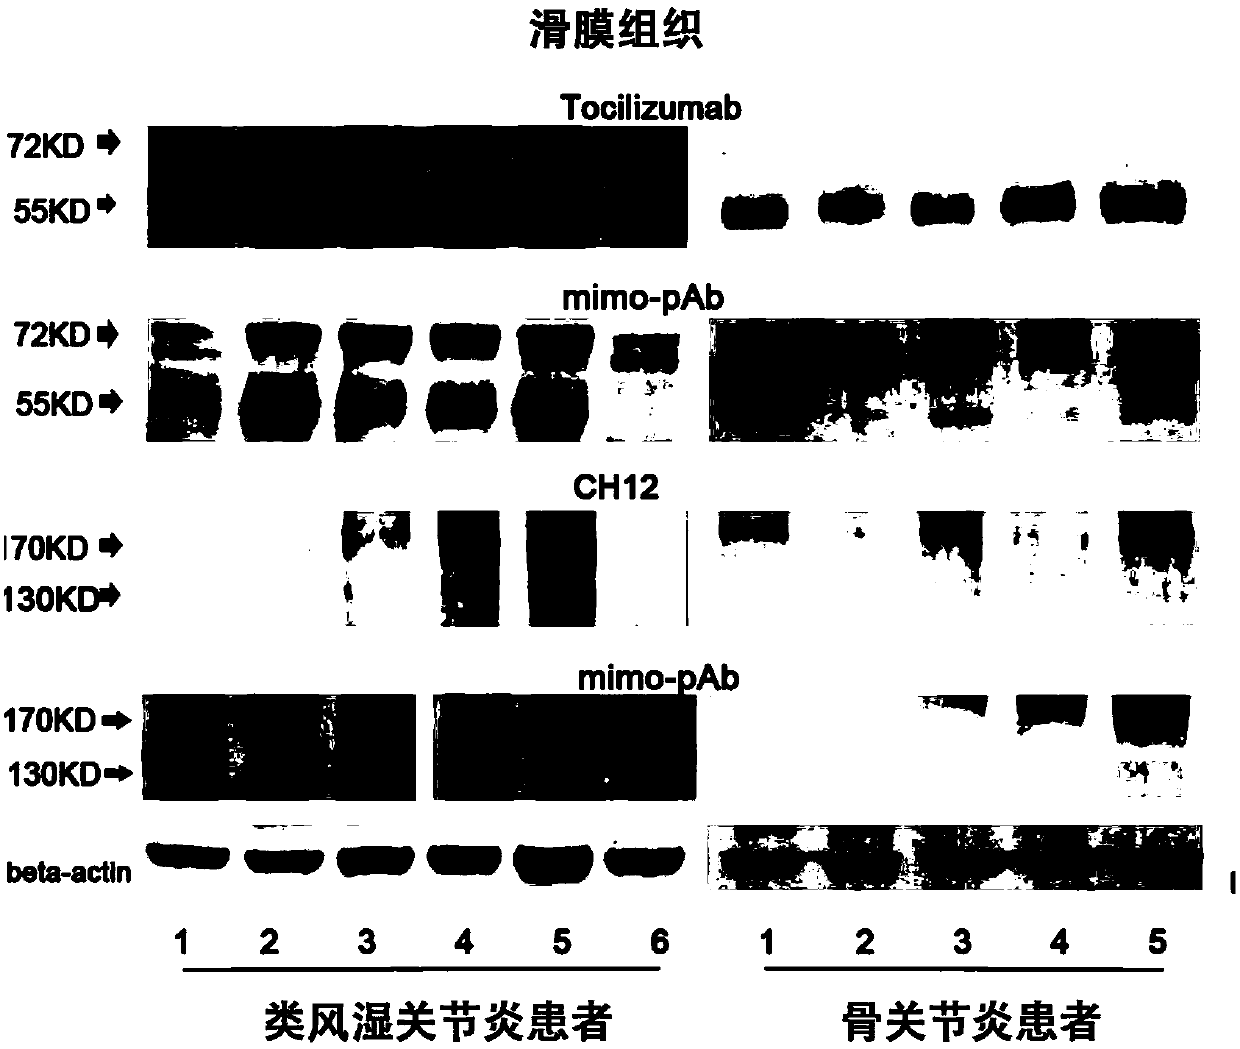 tocilizumab/ch12 conjugated mimotope peptide